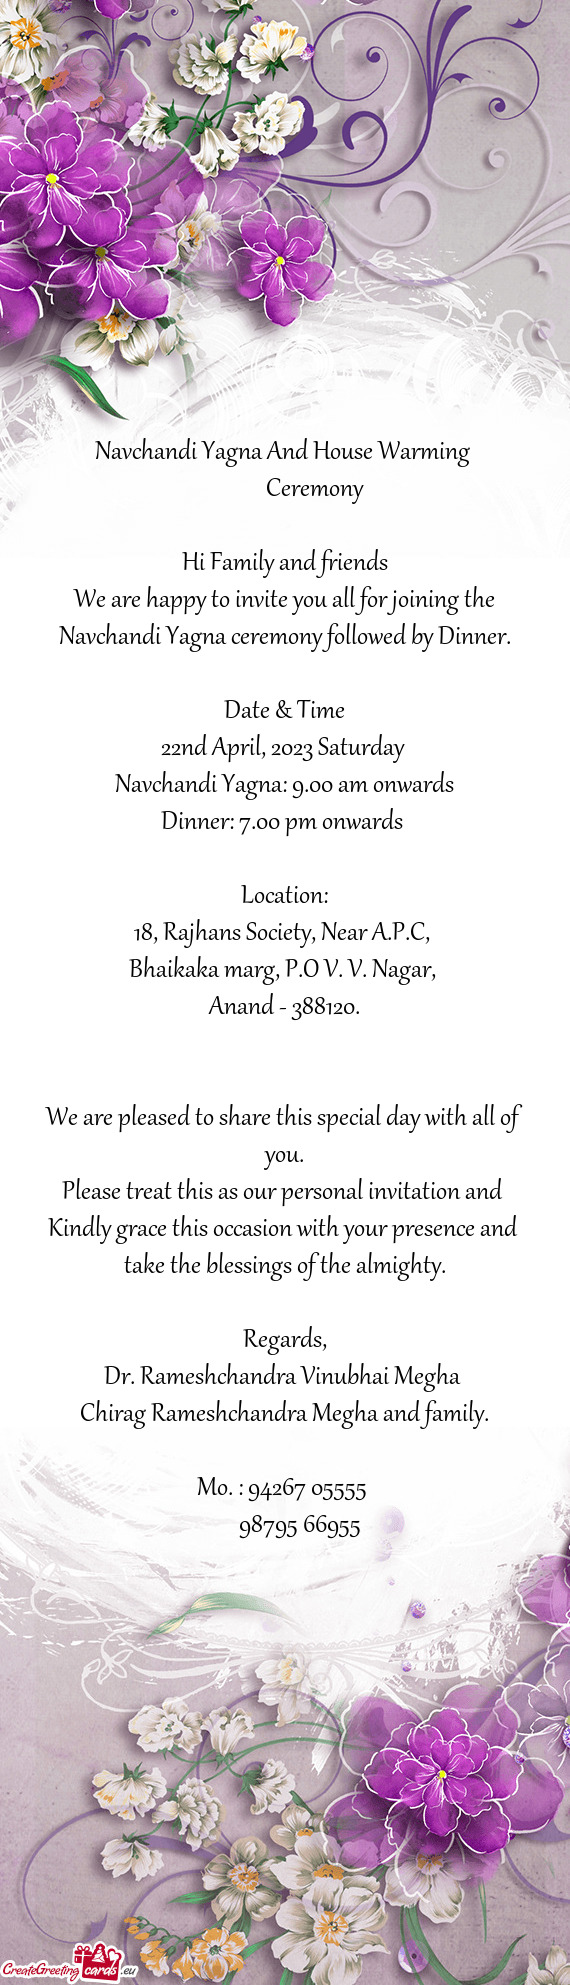 Navchandi Yagna ceremony followed by Dinner